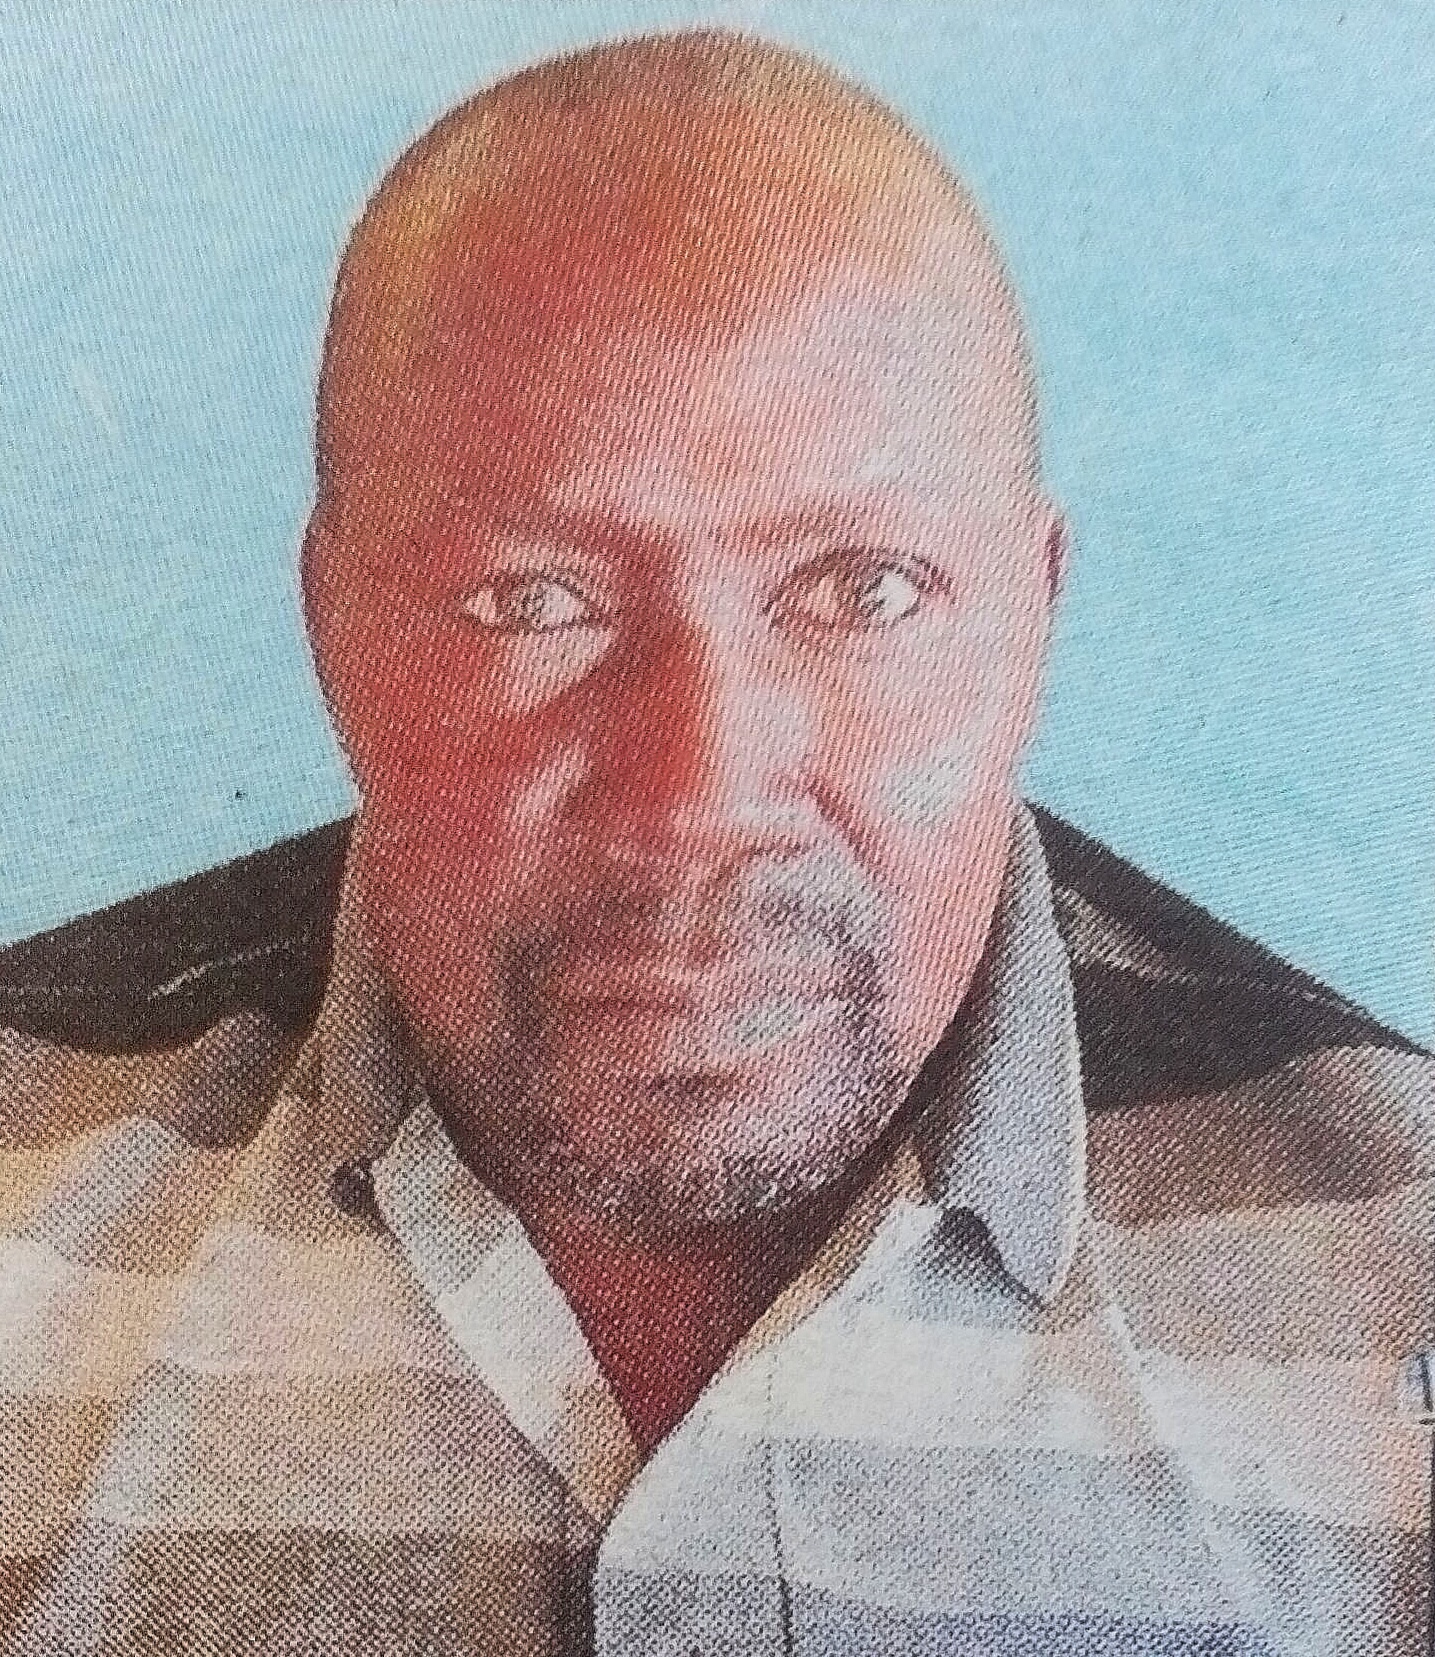 Obituary Image of Theophilus Kimeu Ngovi